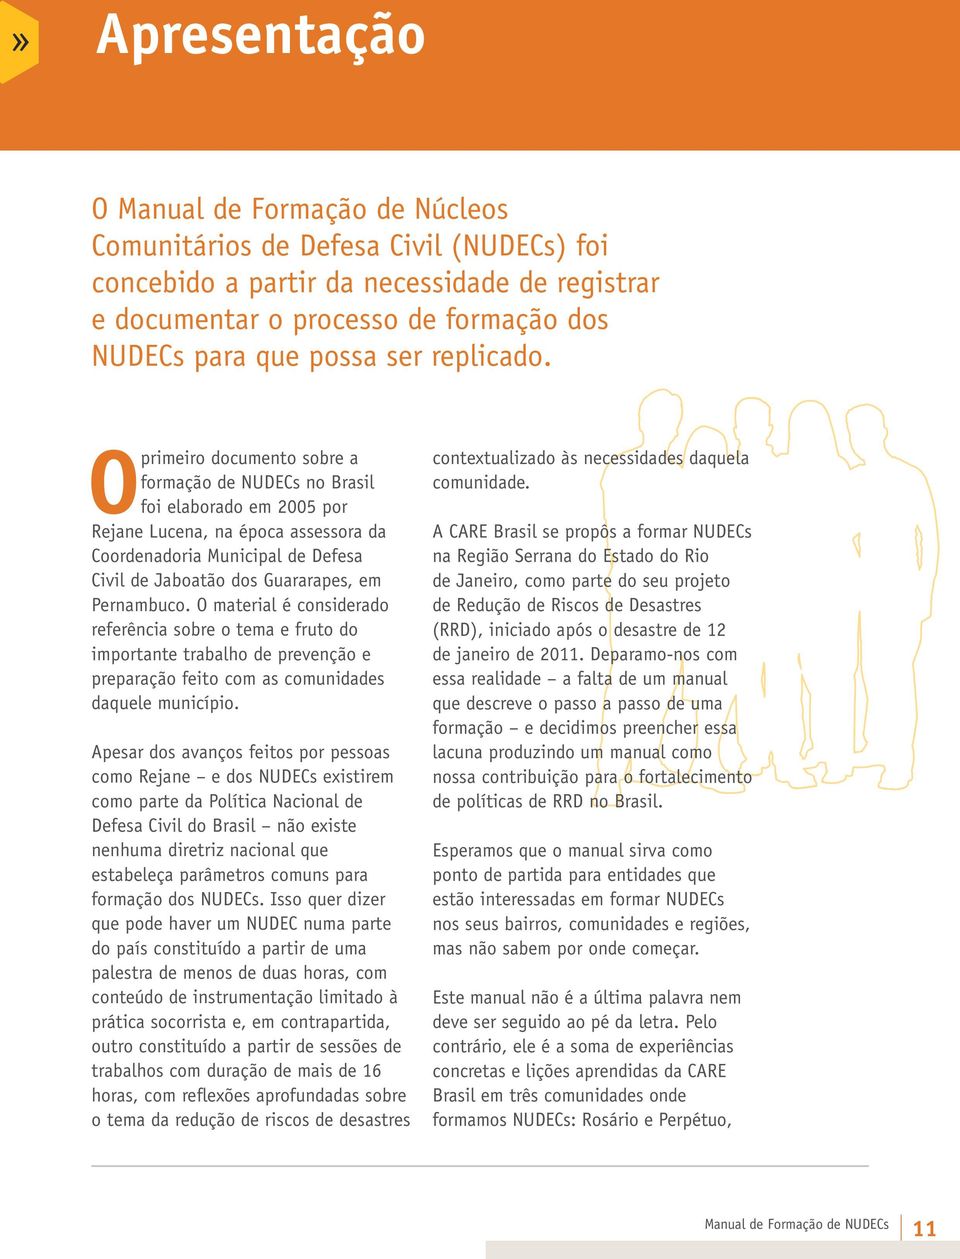 O primeiro documento sobre a formação de NUDECs no Brasil foi elaborado em 2005 por Rejane Lucena, na época assessora da Coordenadoria Municipal de Defesa Civil de Jaboatão dos Guararapes, em